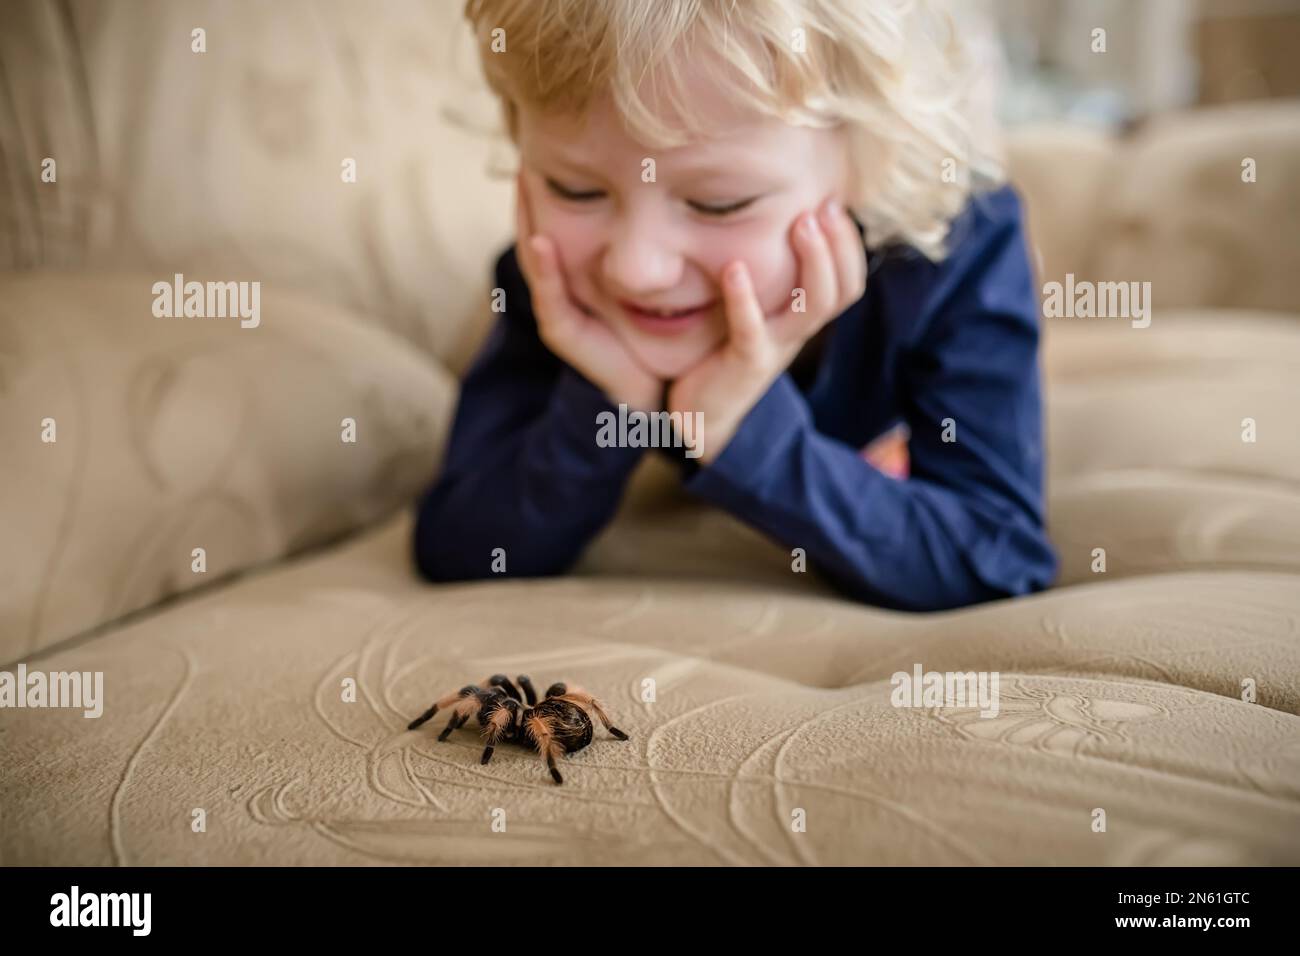 Une petite fille sans arachnophobie joue avec une araignée tarantula à la maison sur le canapé Banque D'Images